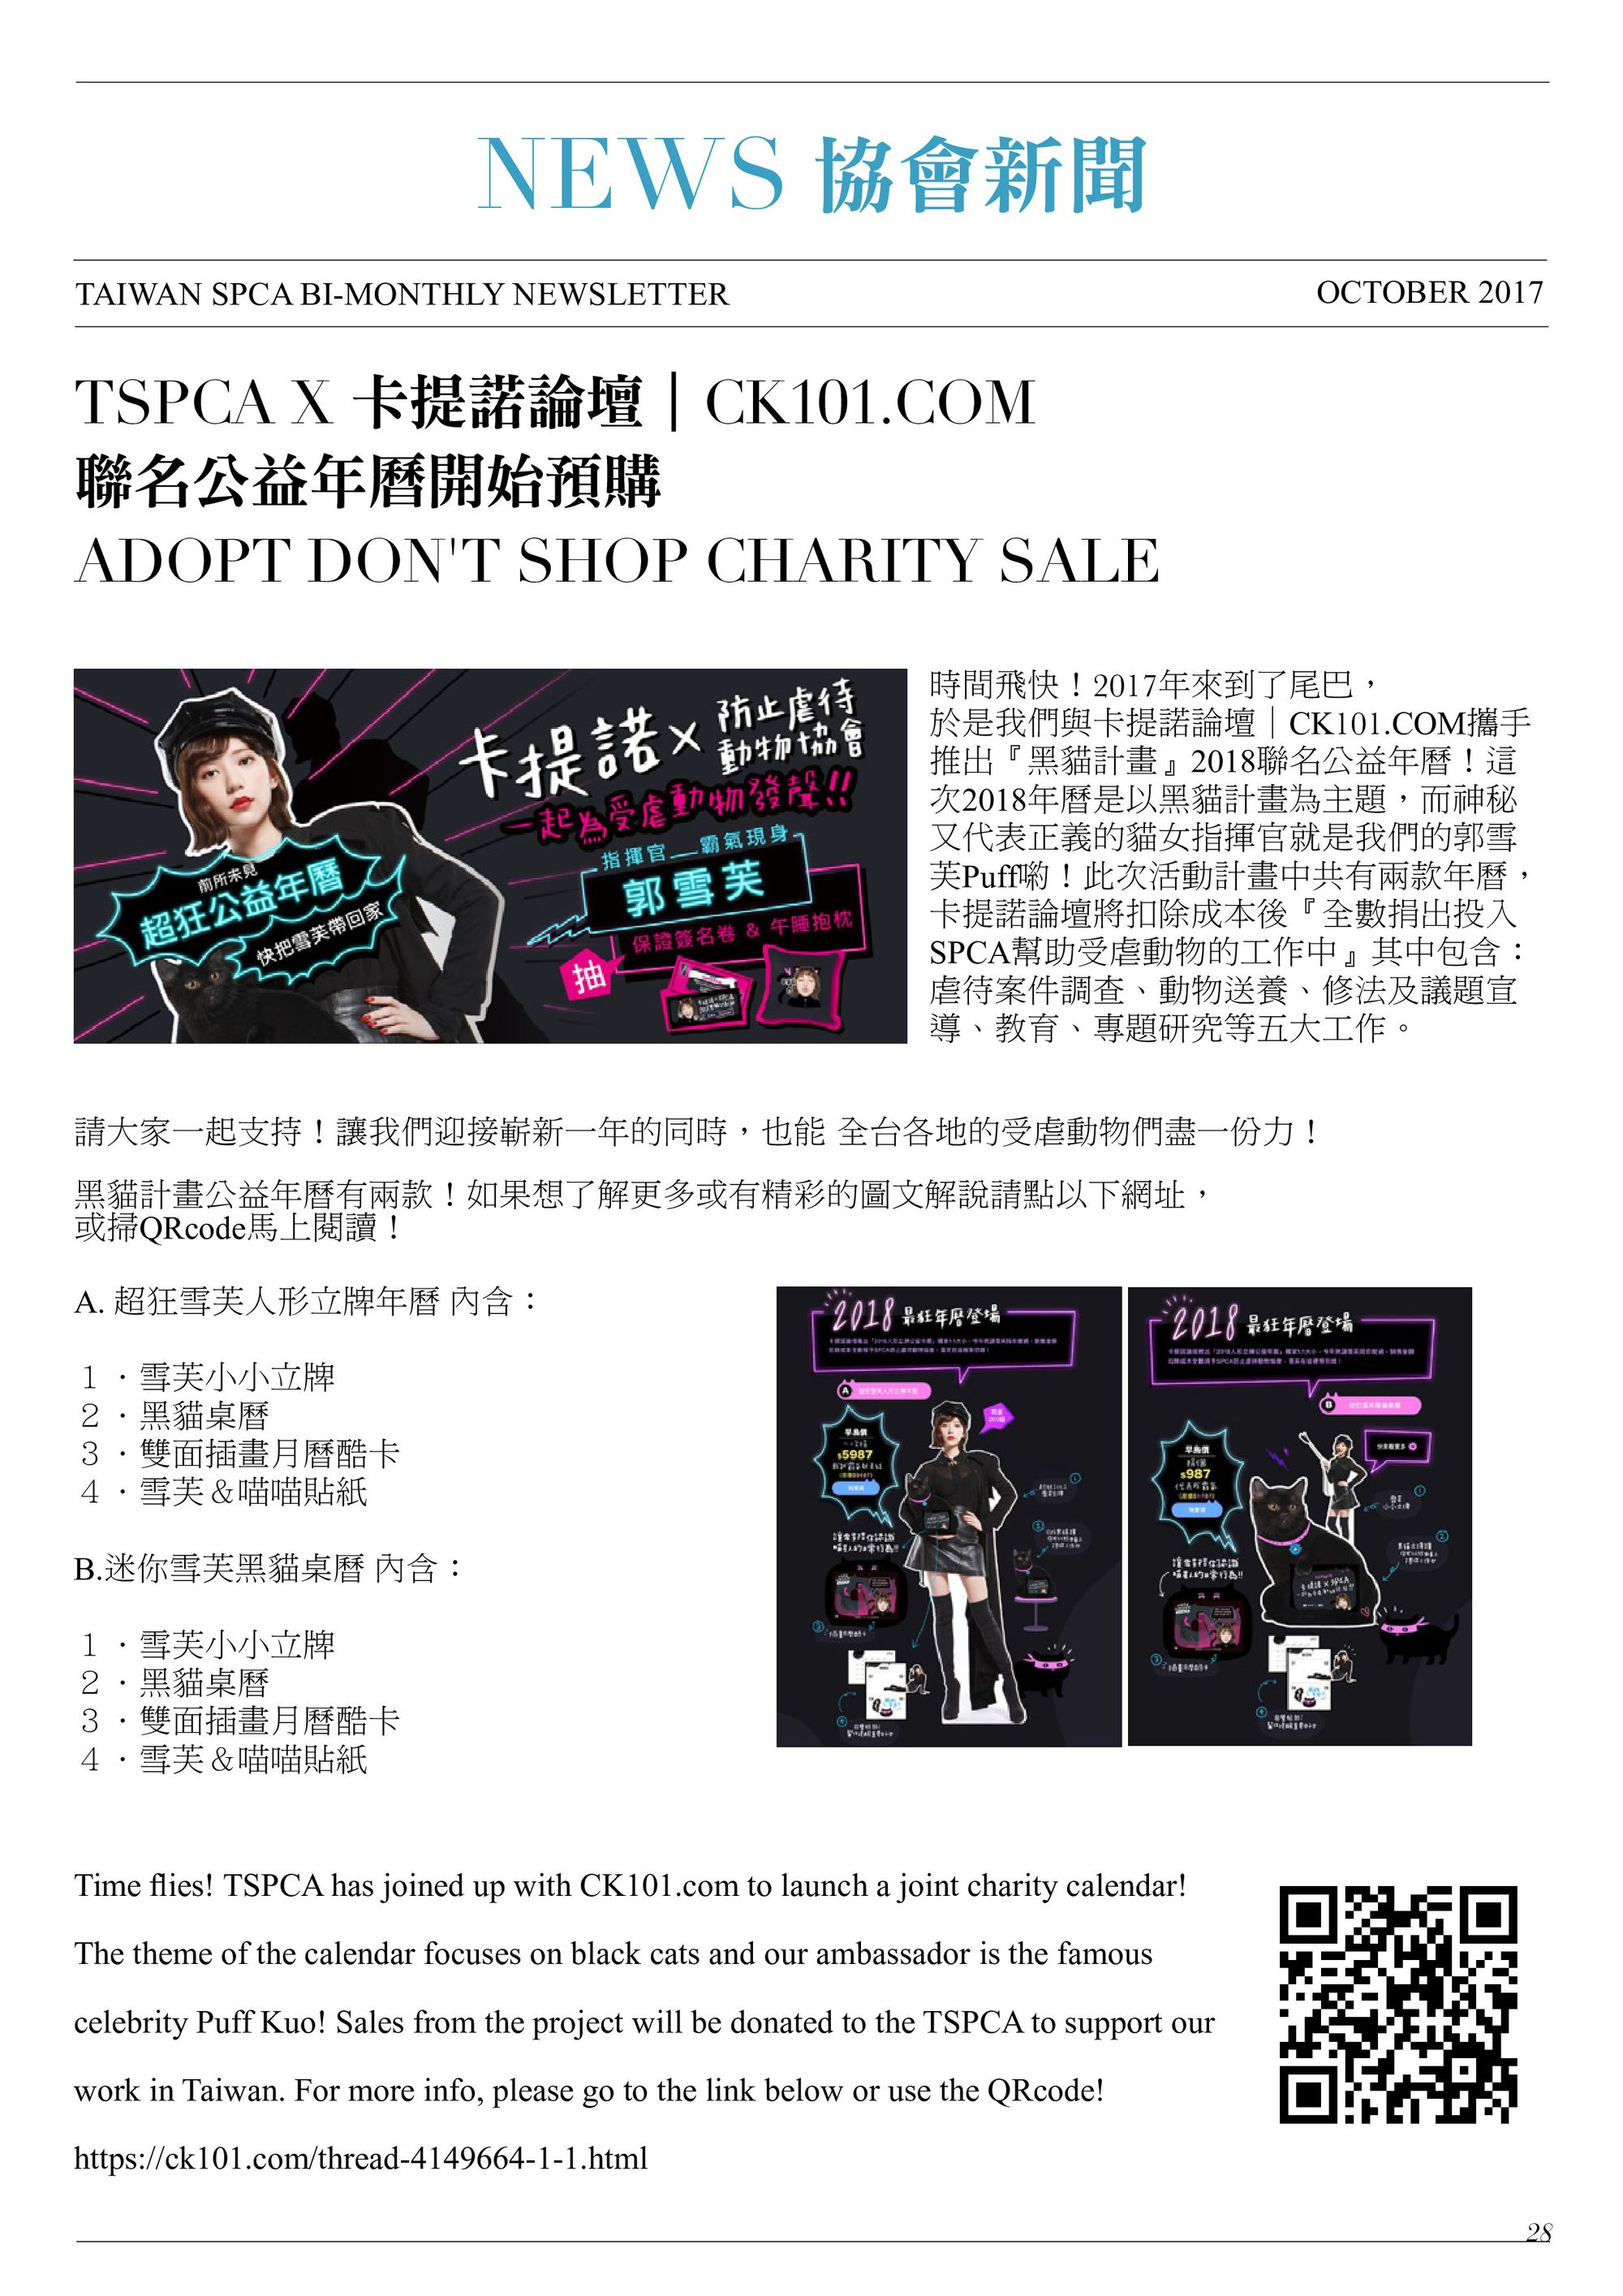 TSPCA X 卡提諾論壇｜CK101.COM 聯名公益年曆開始預購